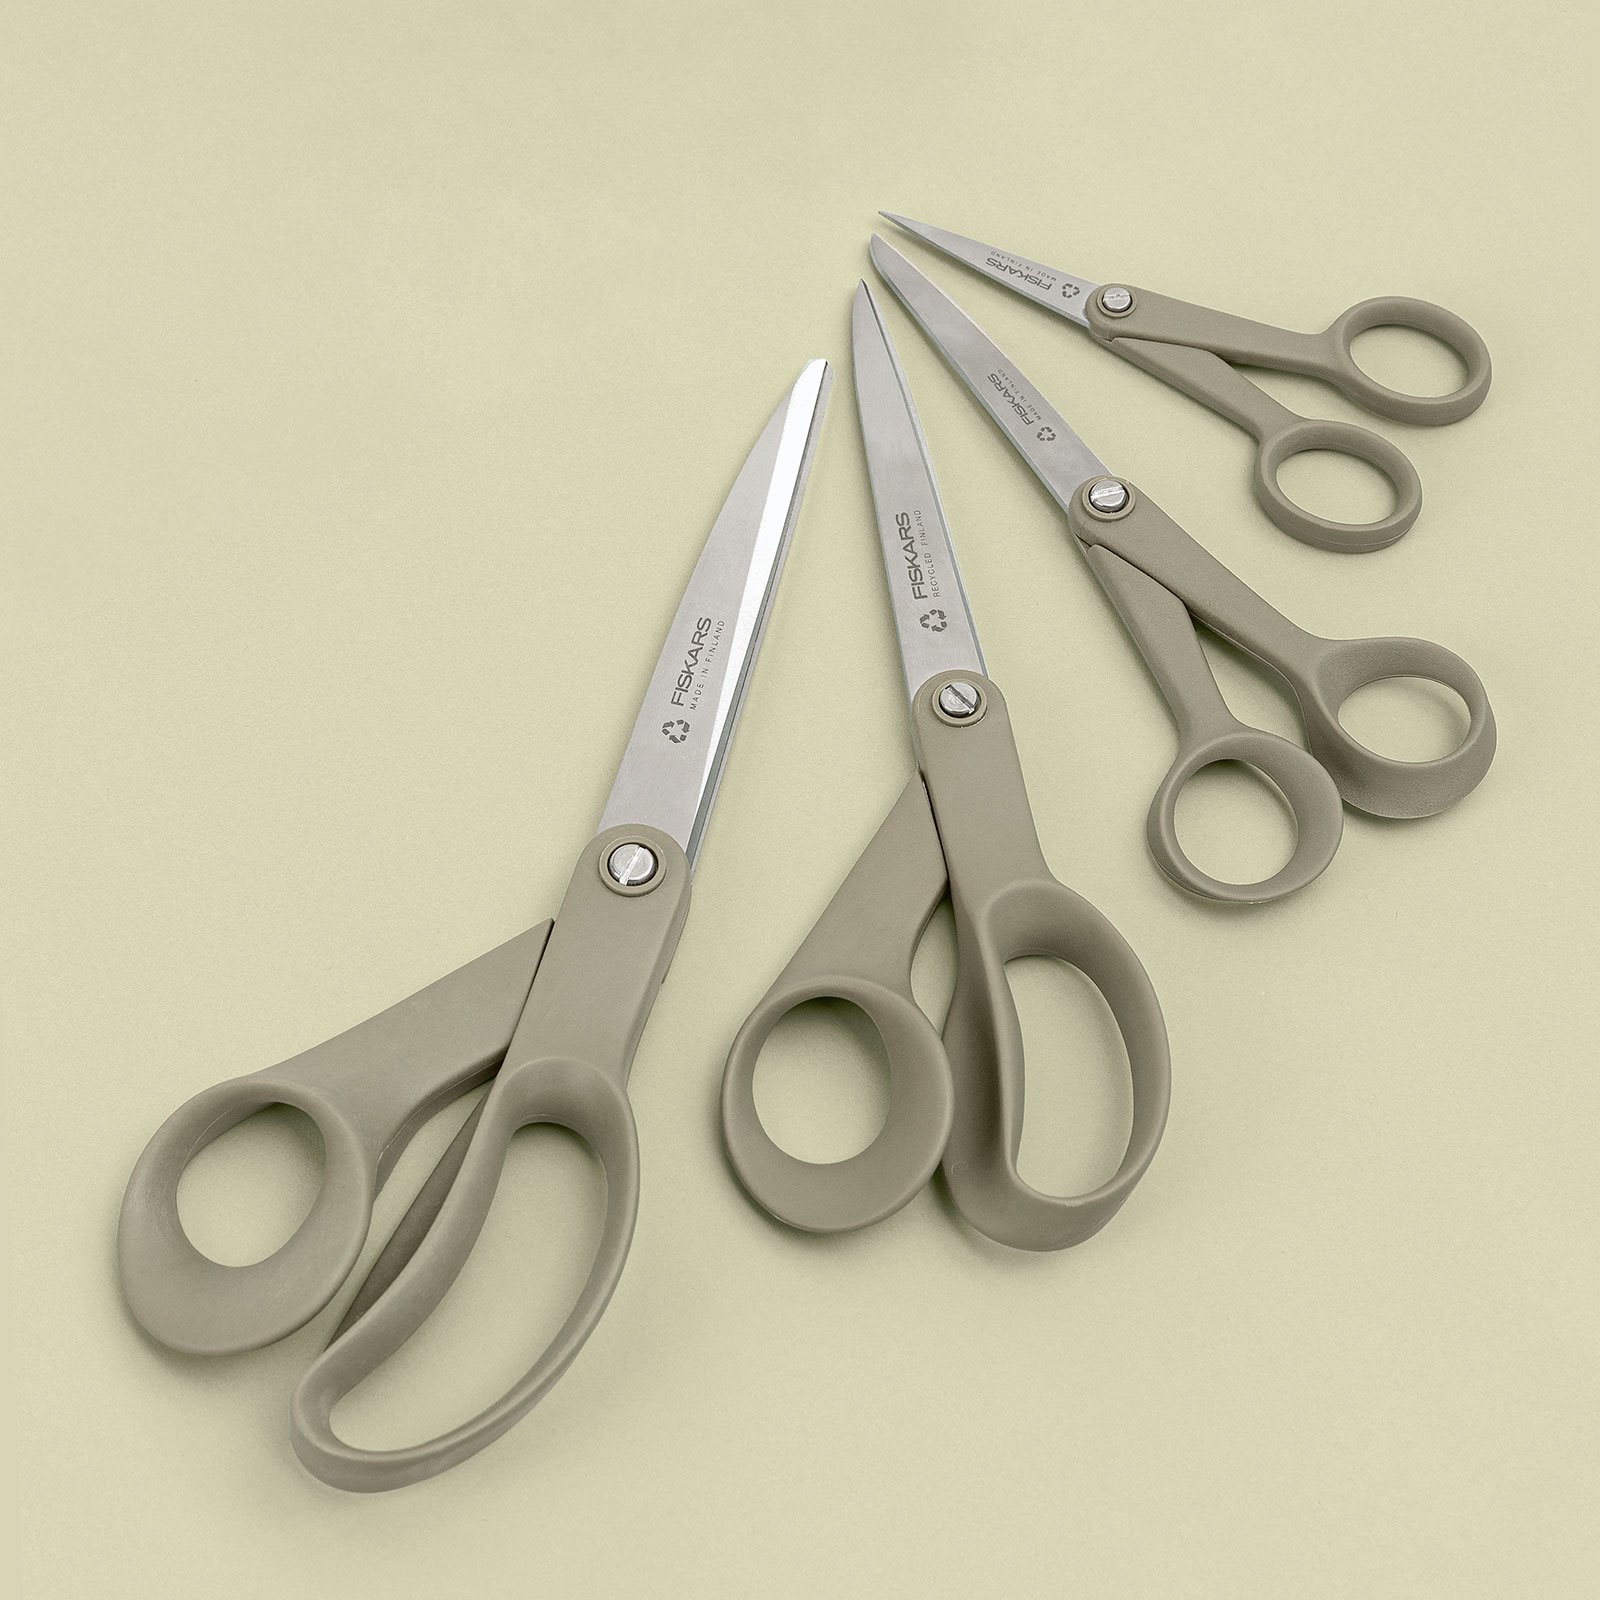 Fiskars ReNew universal scissors 17cm 42030_42031_42032_42033_sskit